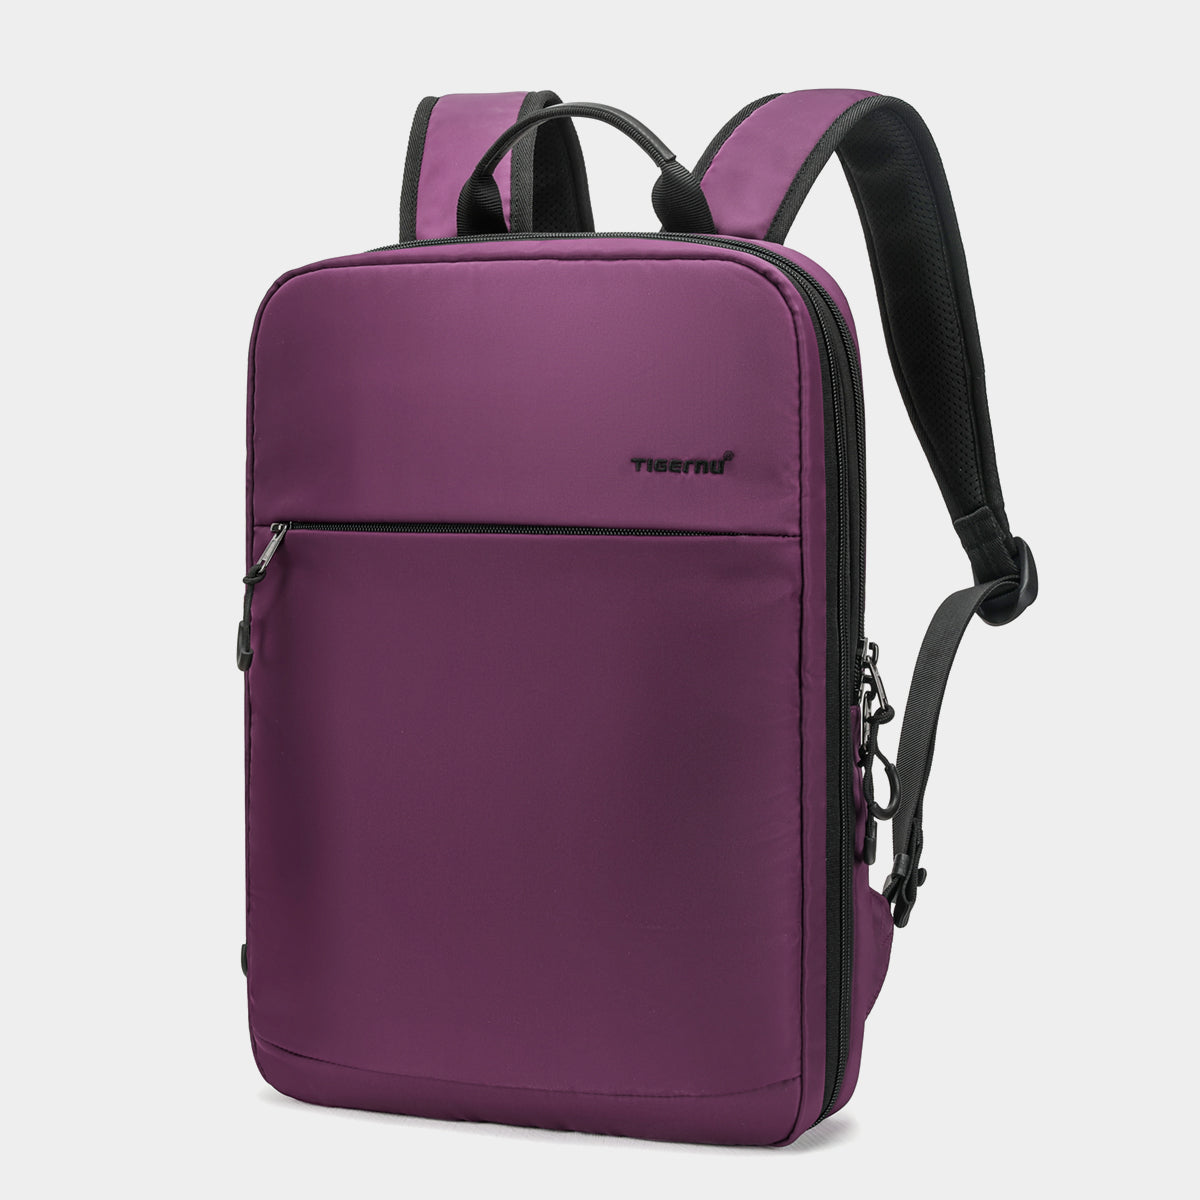 Tigernu TB-S slim backpack for women black